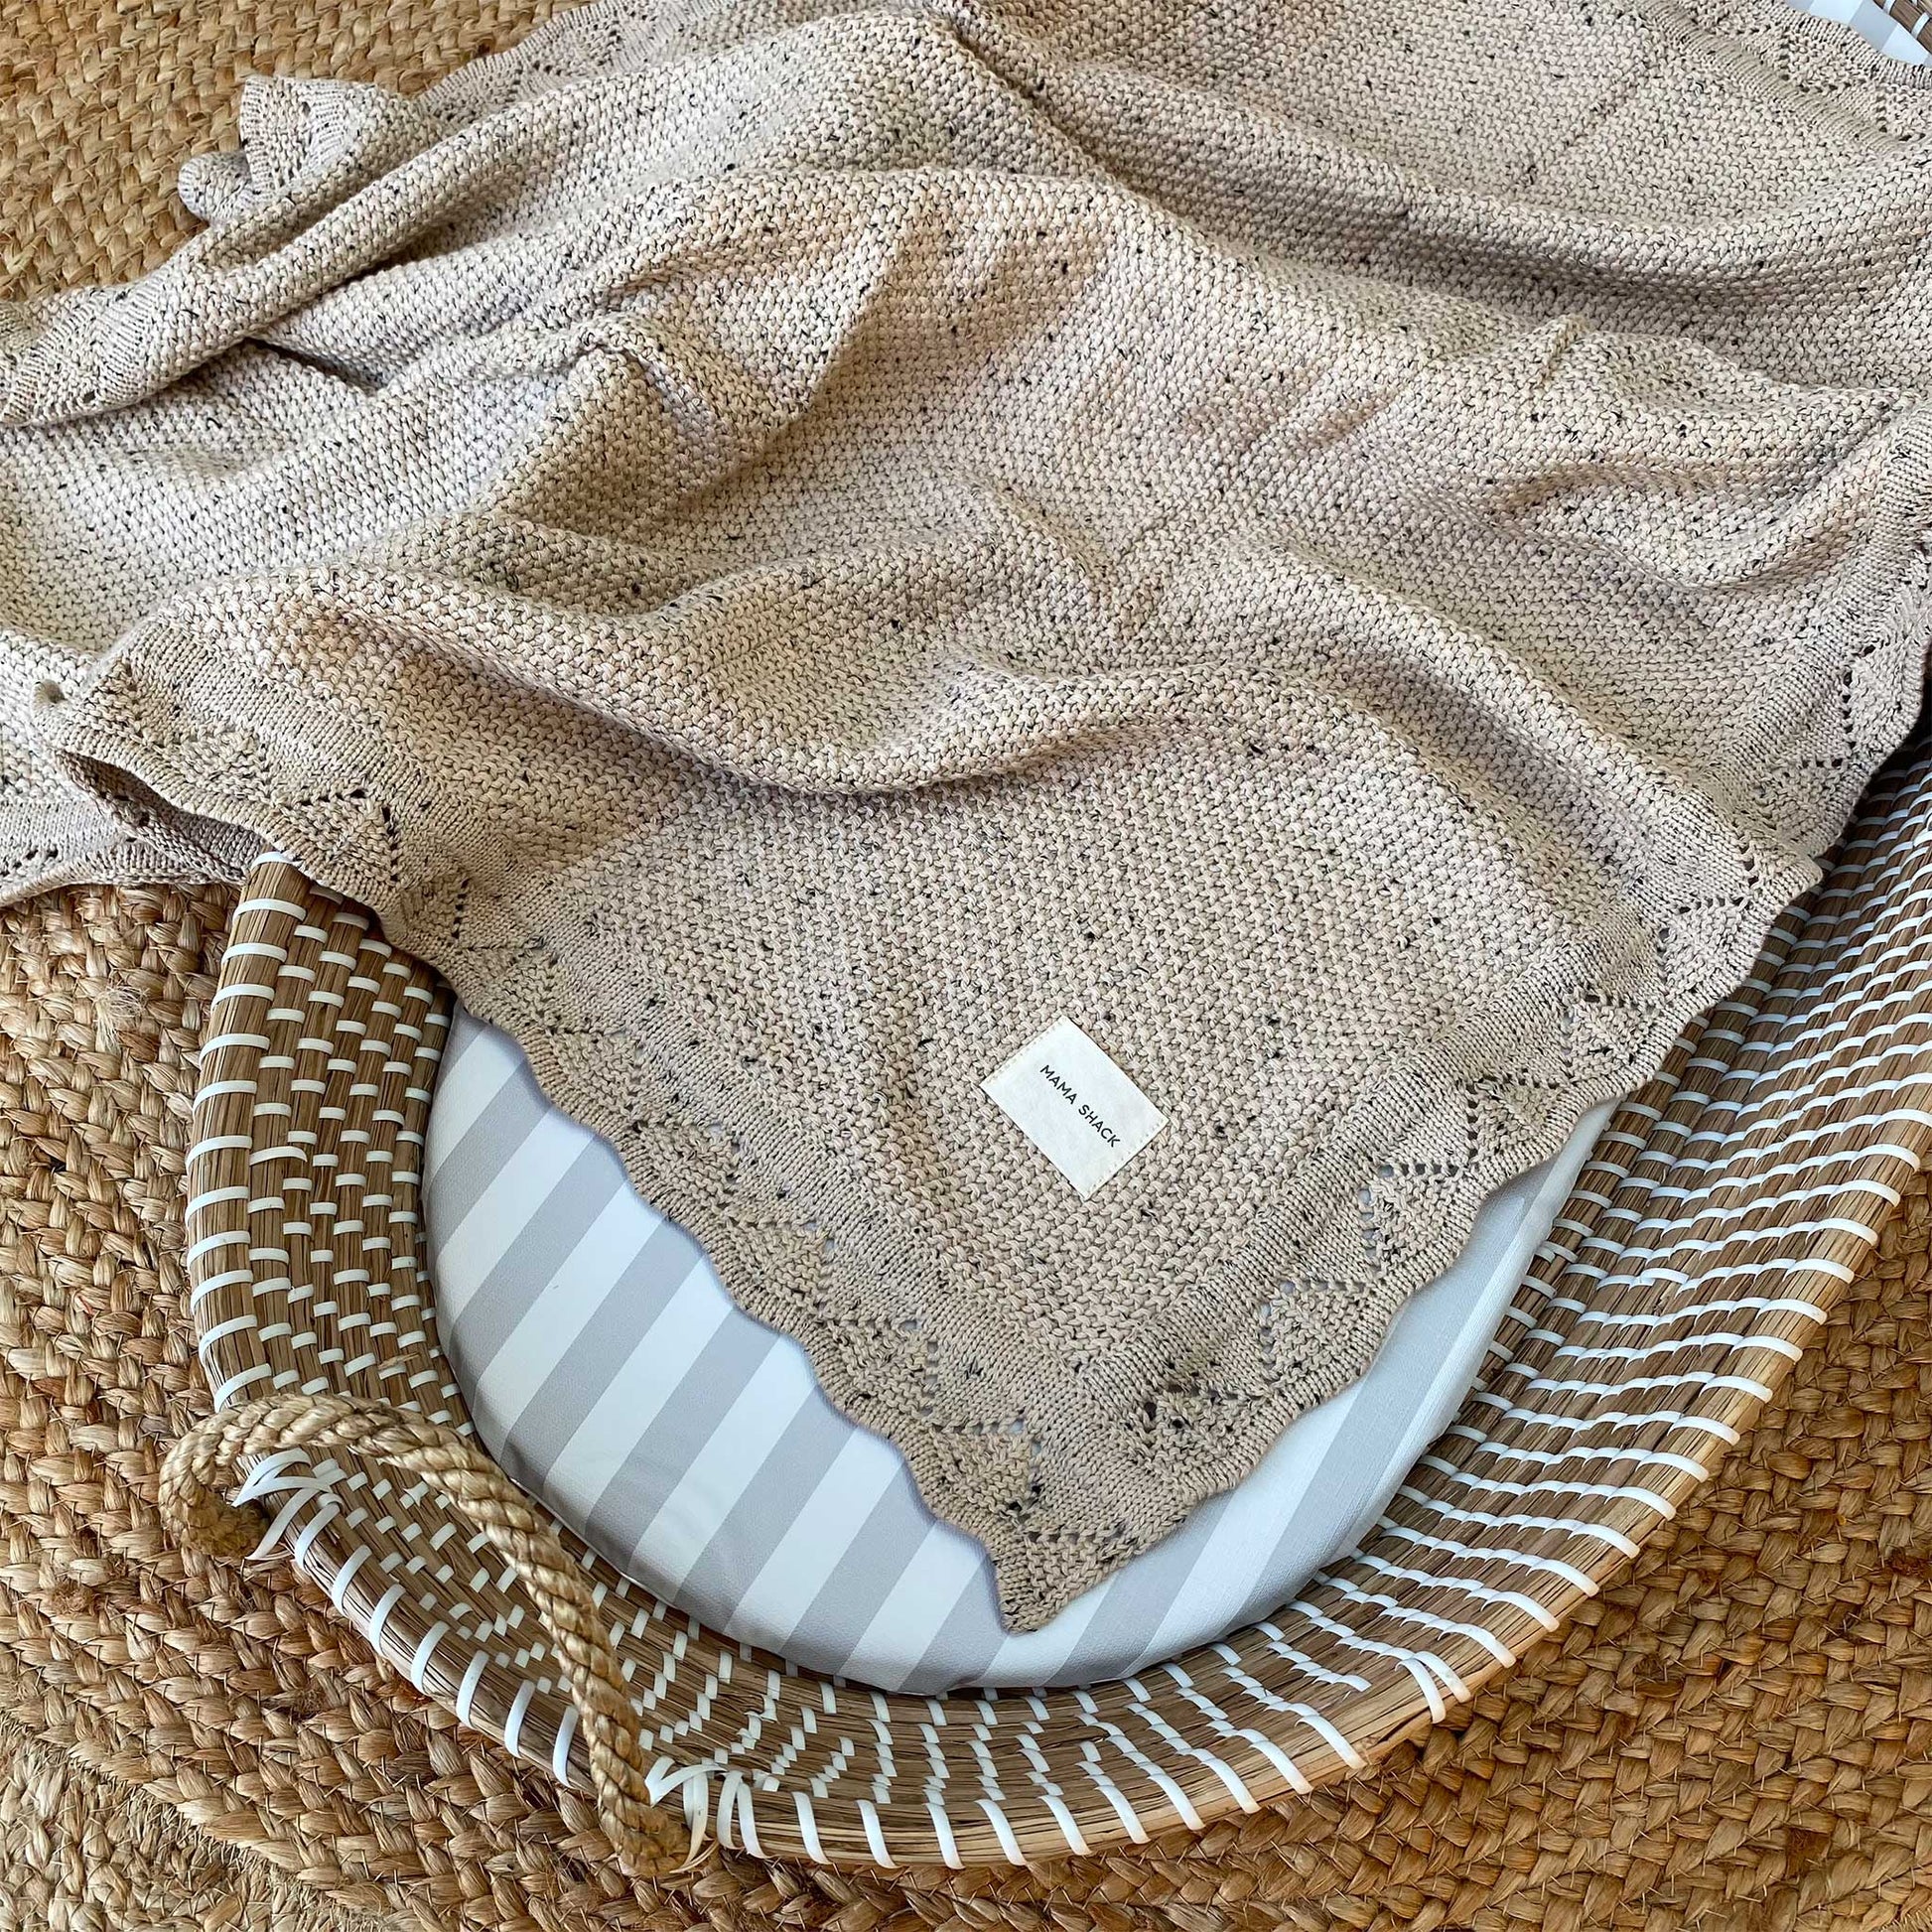 Vintage Knitted Blanket - Speckled Latte